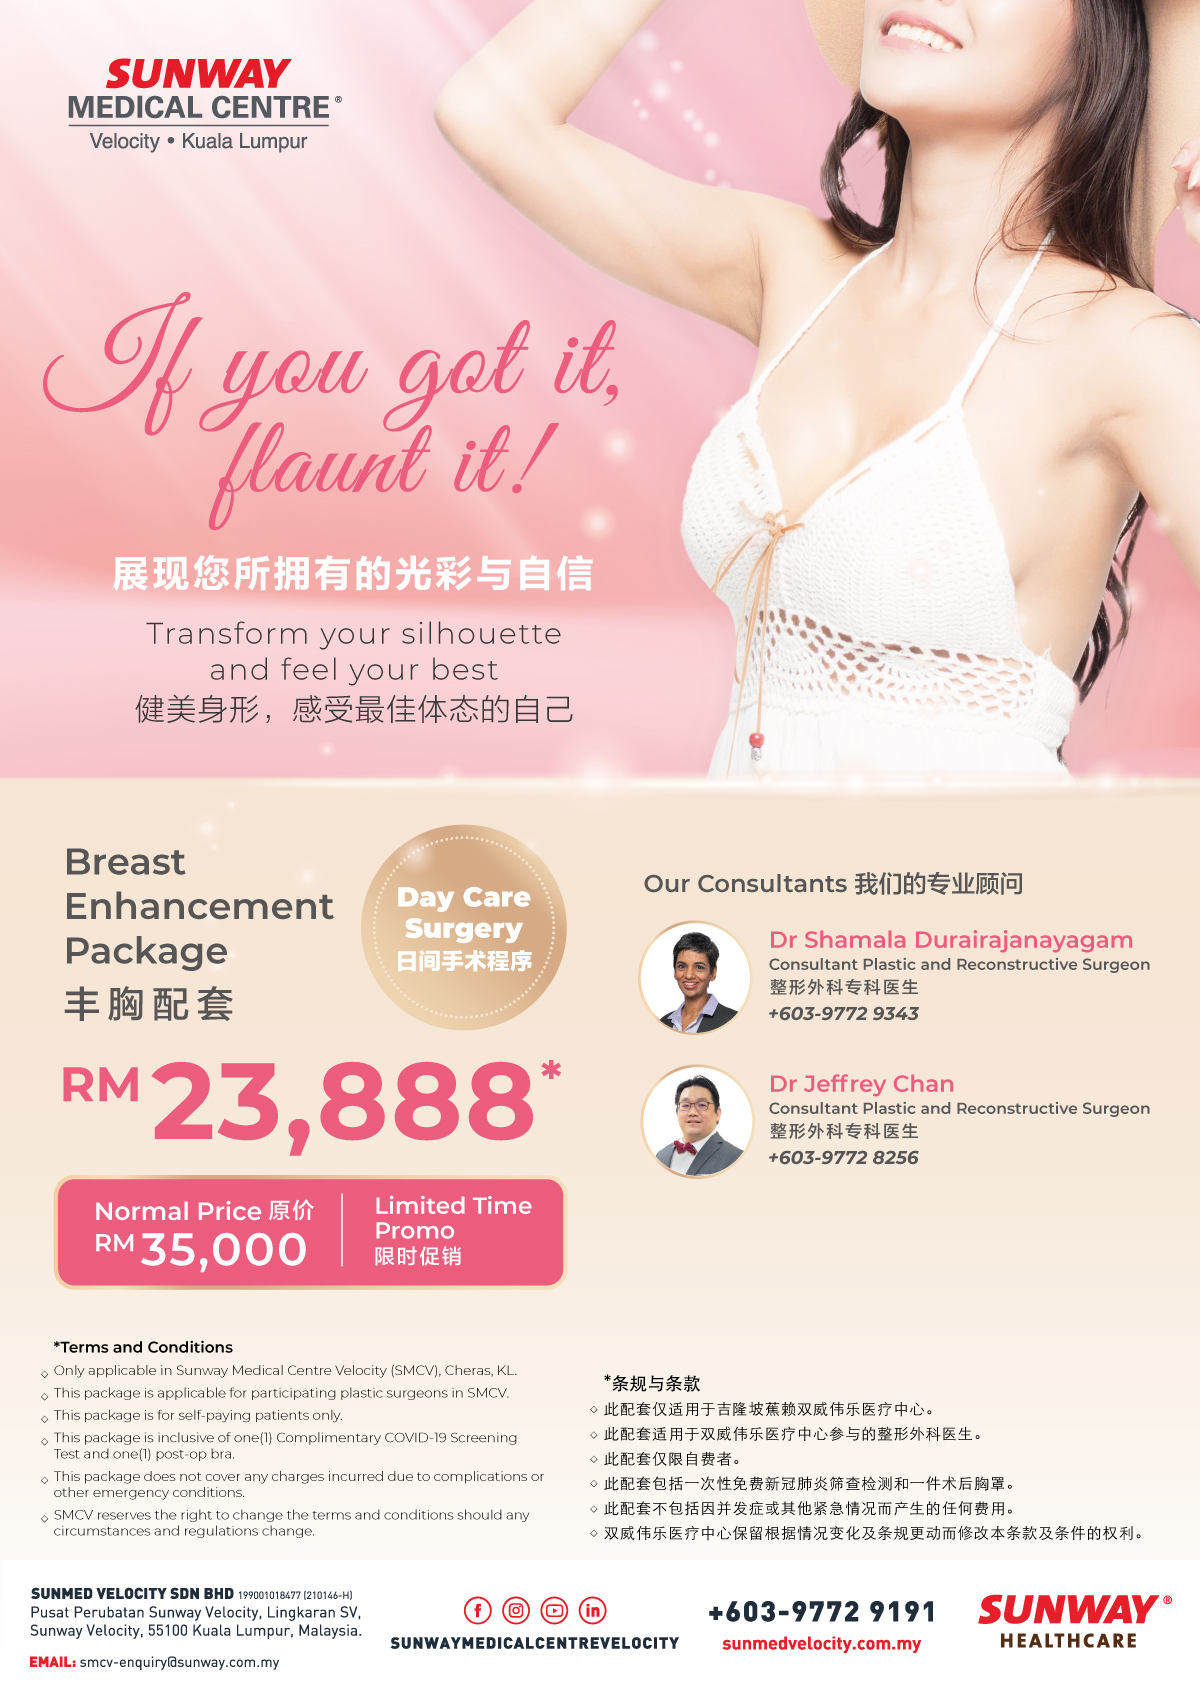 Breast Enhancement Package